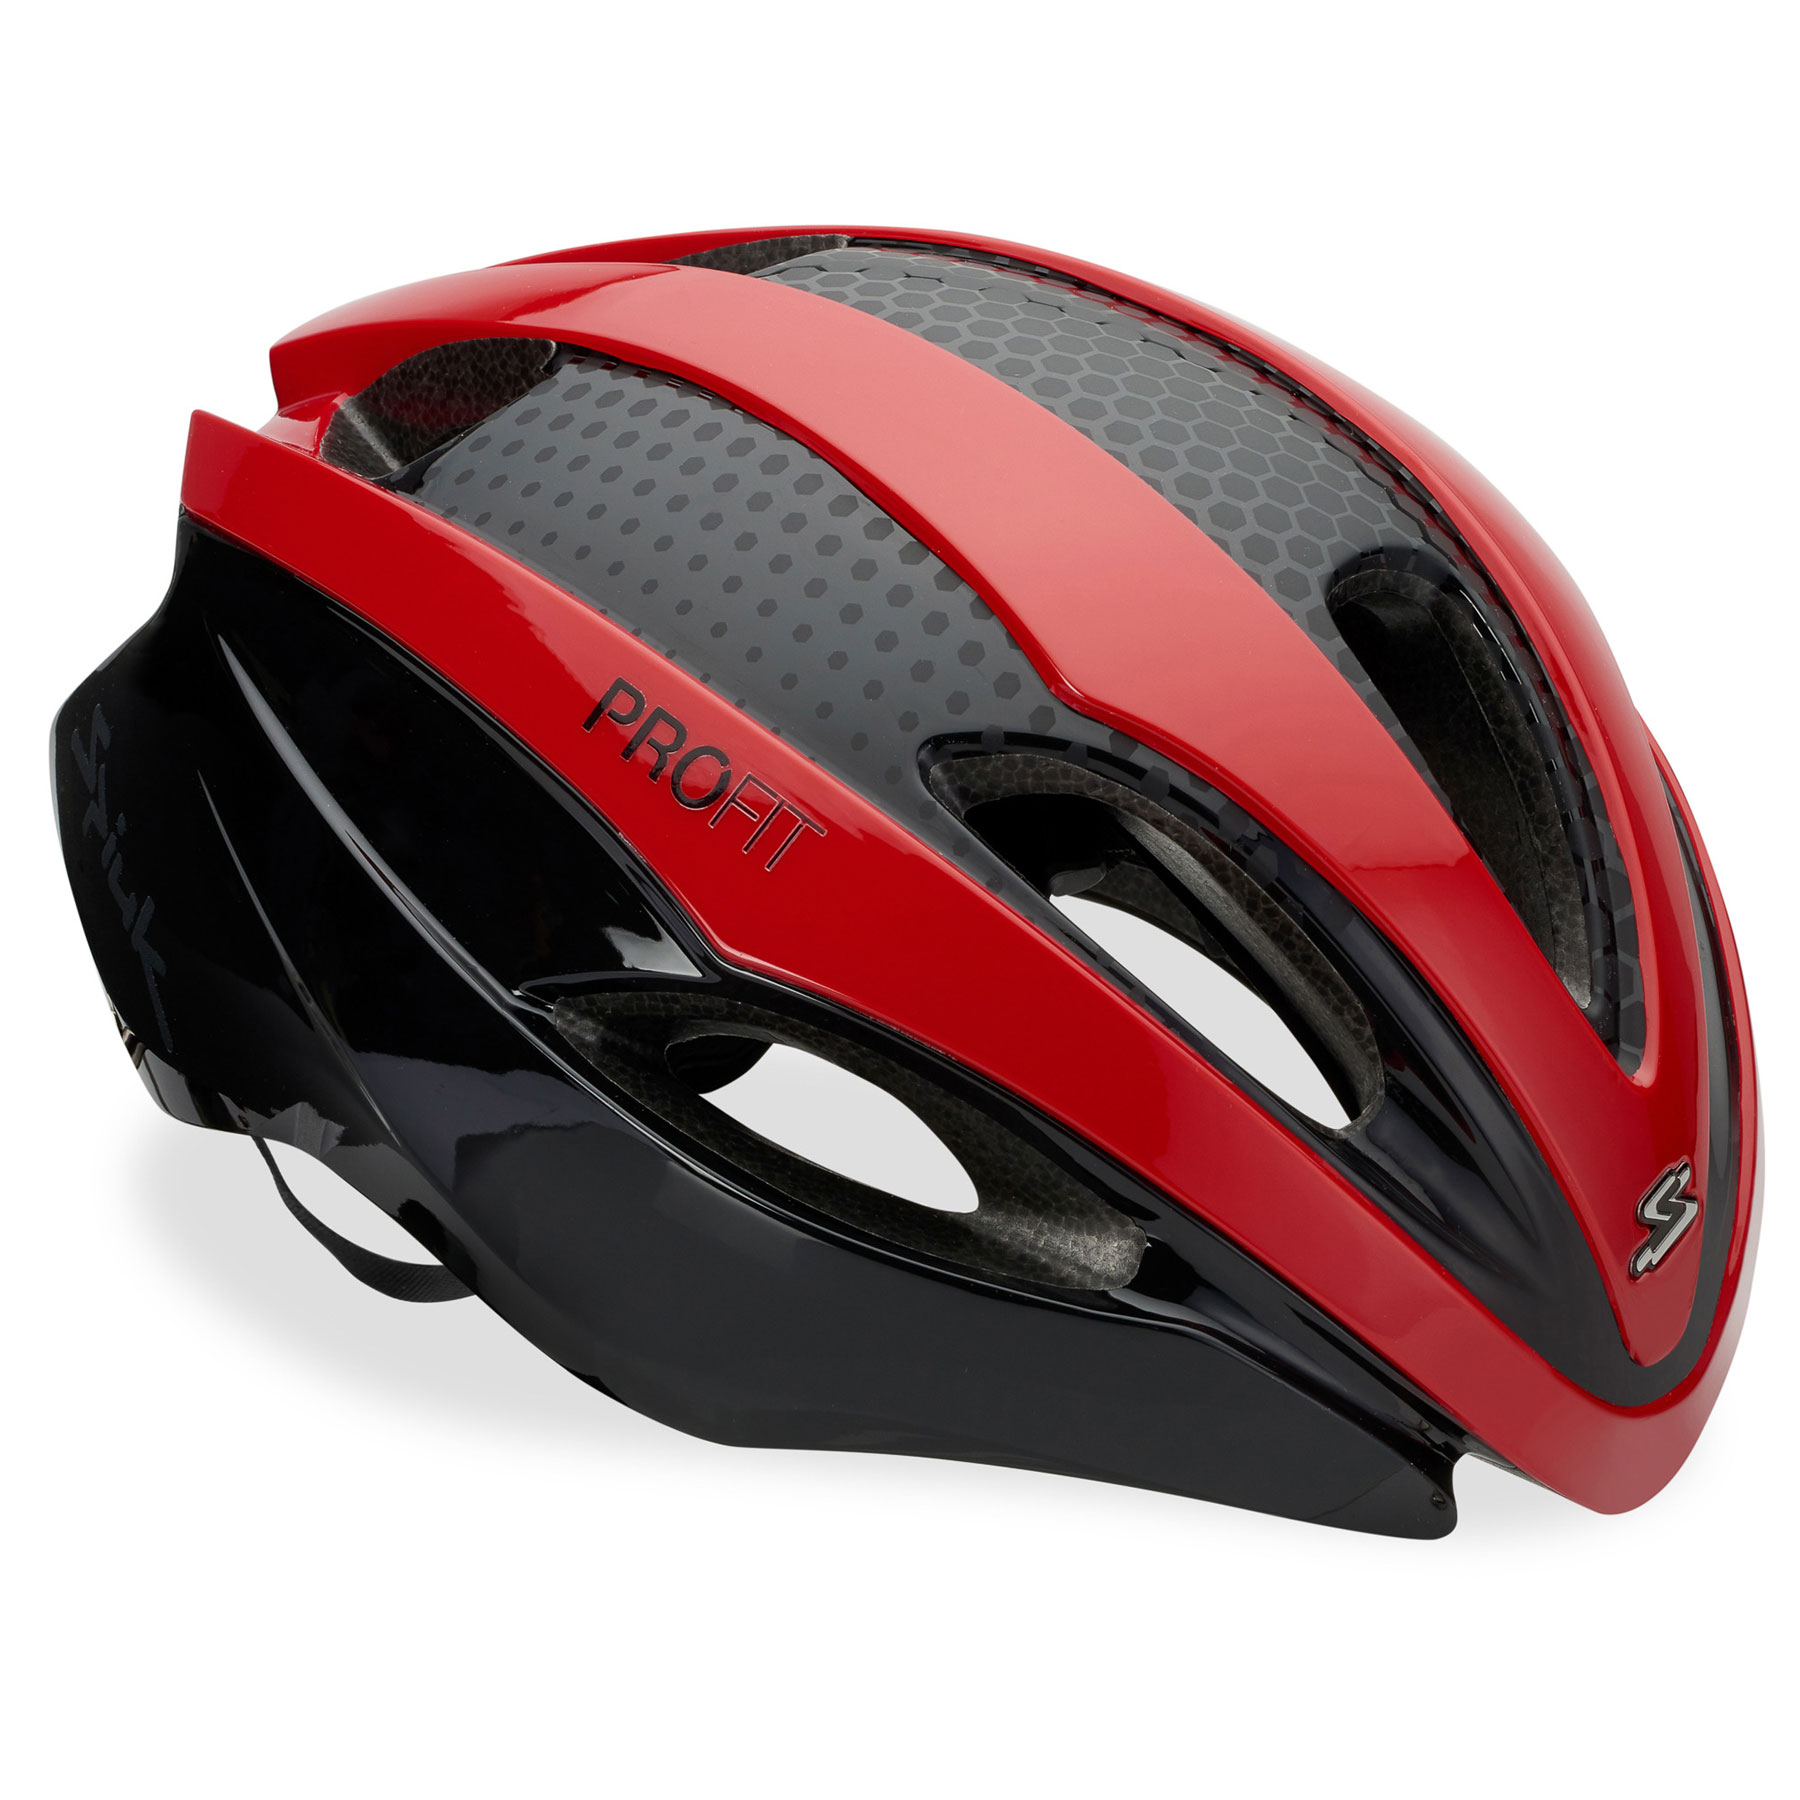 Produktbild von Spiuk PROFIT Aero Helmet - rot/schwarz